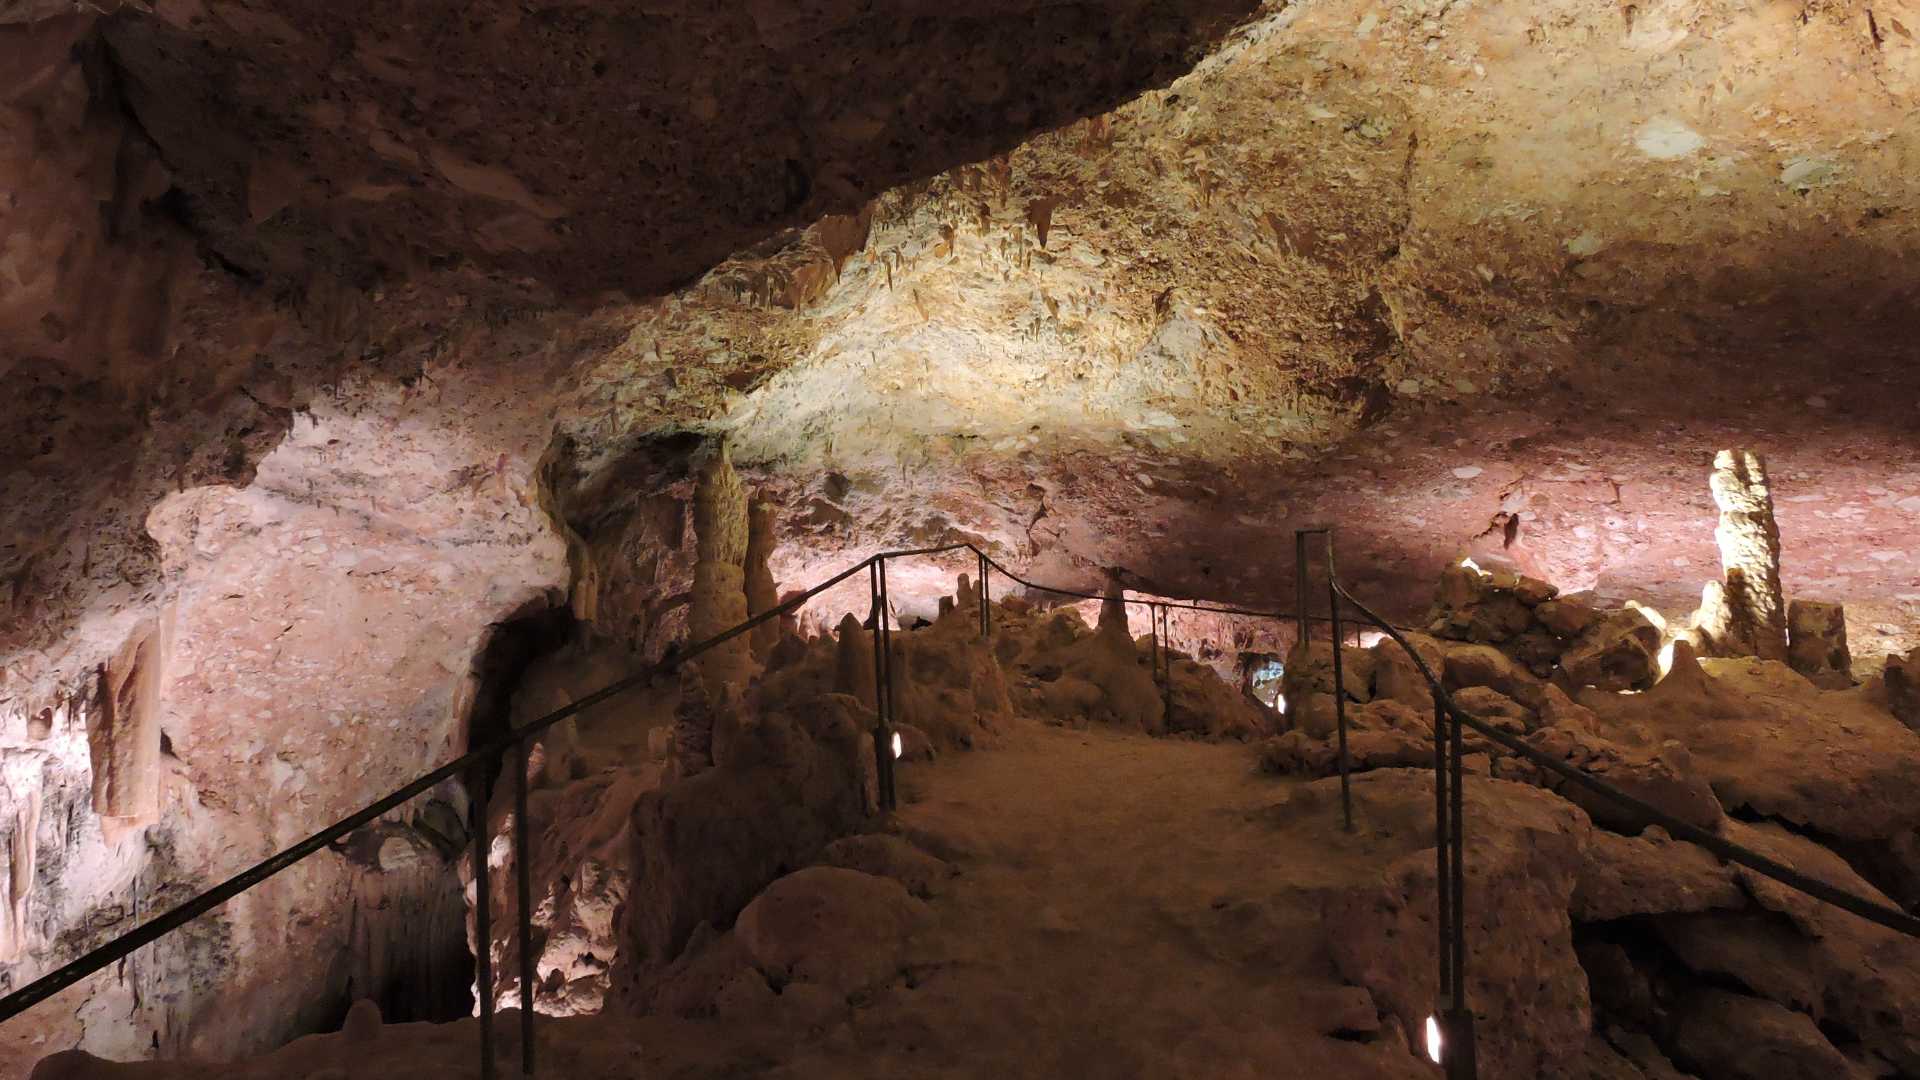 höhle don juan besichtigen